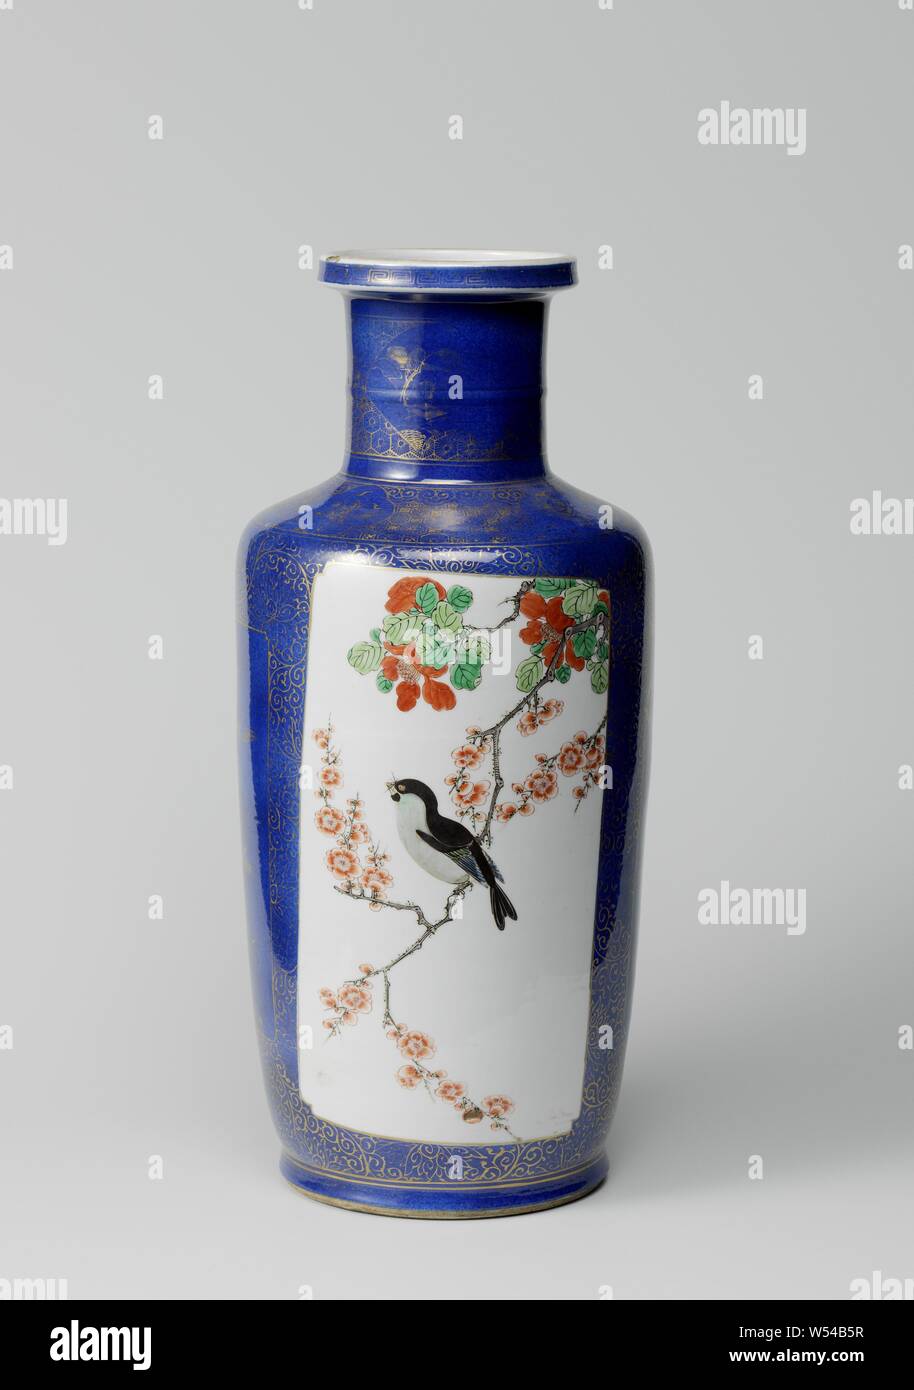 Vase cylindrique de poudre bleu et panneaux en réserve avec les sprays de fleurs et oiseaux bleu, rouge, vert, jaune, noir et or. Le vase est recouvert de bleu poudré (bleu poudre) avec deux cartouches Rectangulaire avec coins pressé rempli d'un oiseau sur une branche de fleurs (prunus et de pivoine), sur la décoration d'un bleu dans l'or de la boucle de fleurs stylisées et de deux cartouches rectangulaires avec une touche les coins, remplie de roches, du bambou et de la direction générale des deux oiseaux, l'autre avec la direction générale de prunus et un papillon sur l'épaule, une bande ruyi avec motif motif géométrique alternant avec des cartouches lobes Banque D'Images